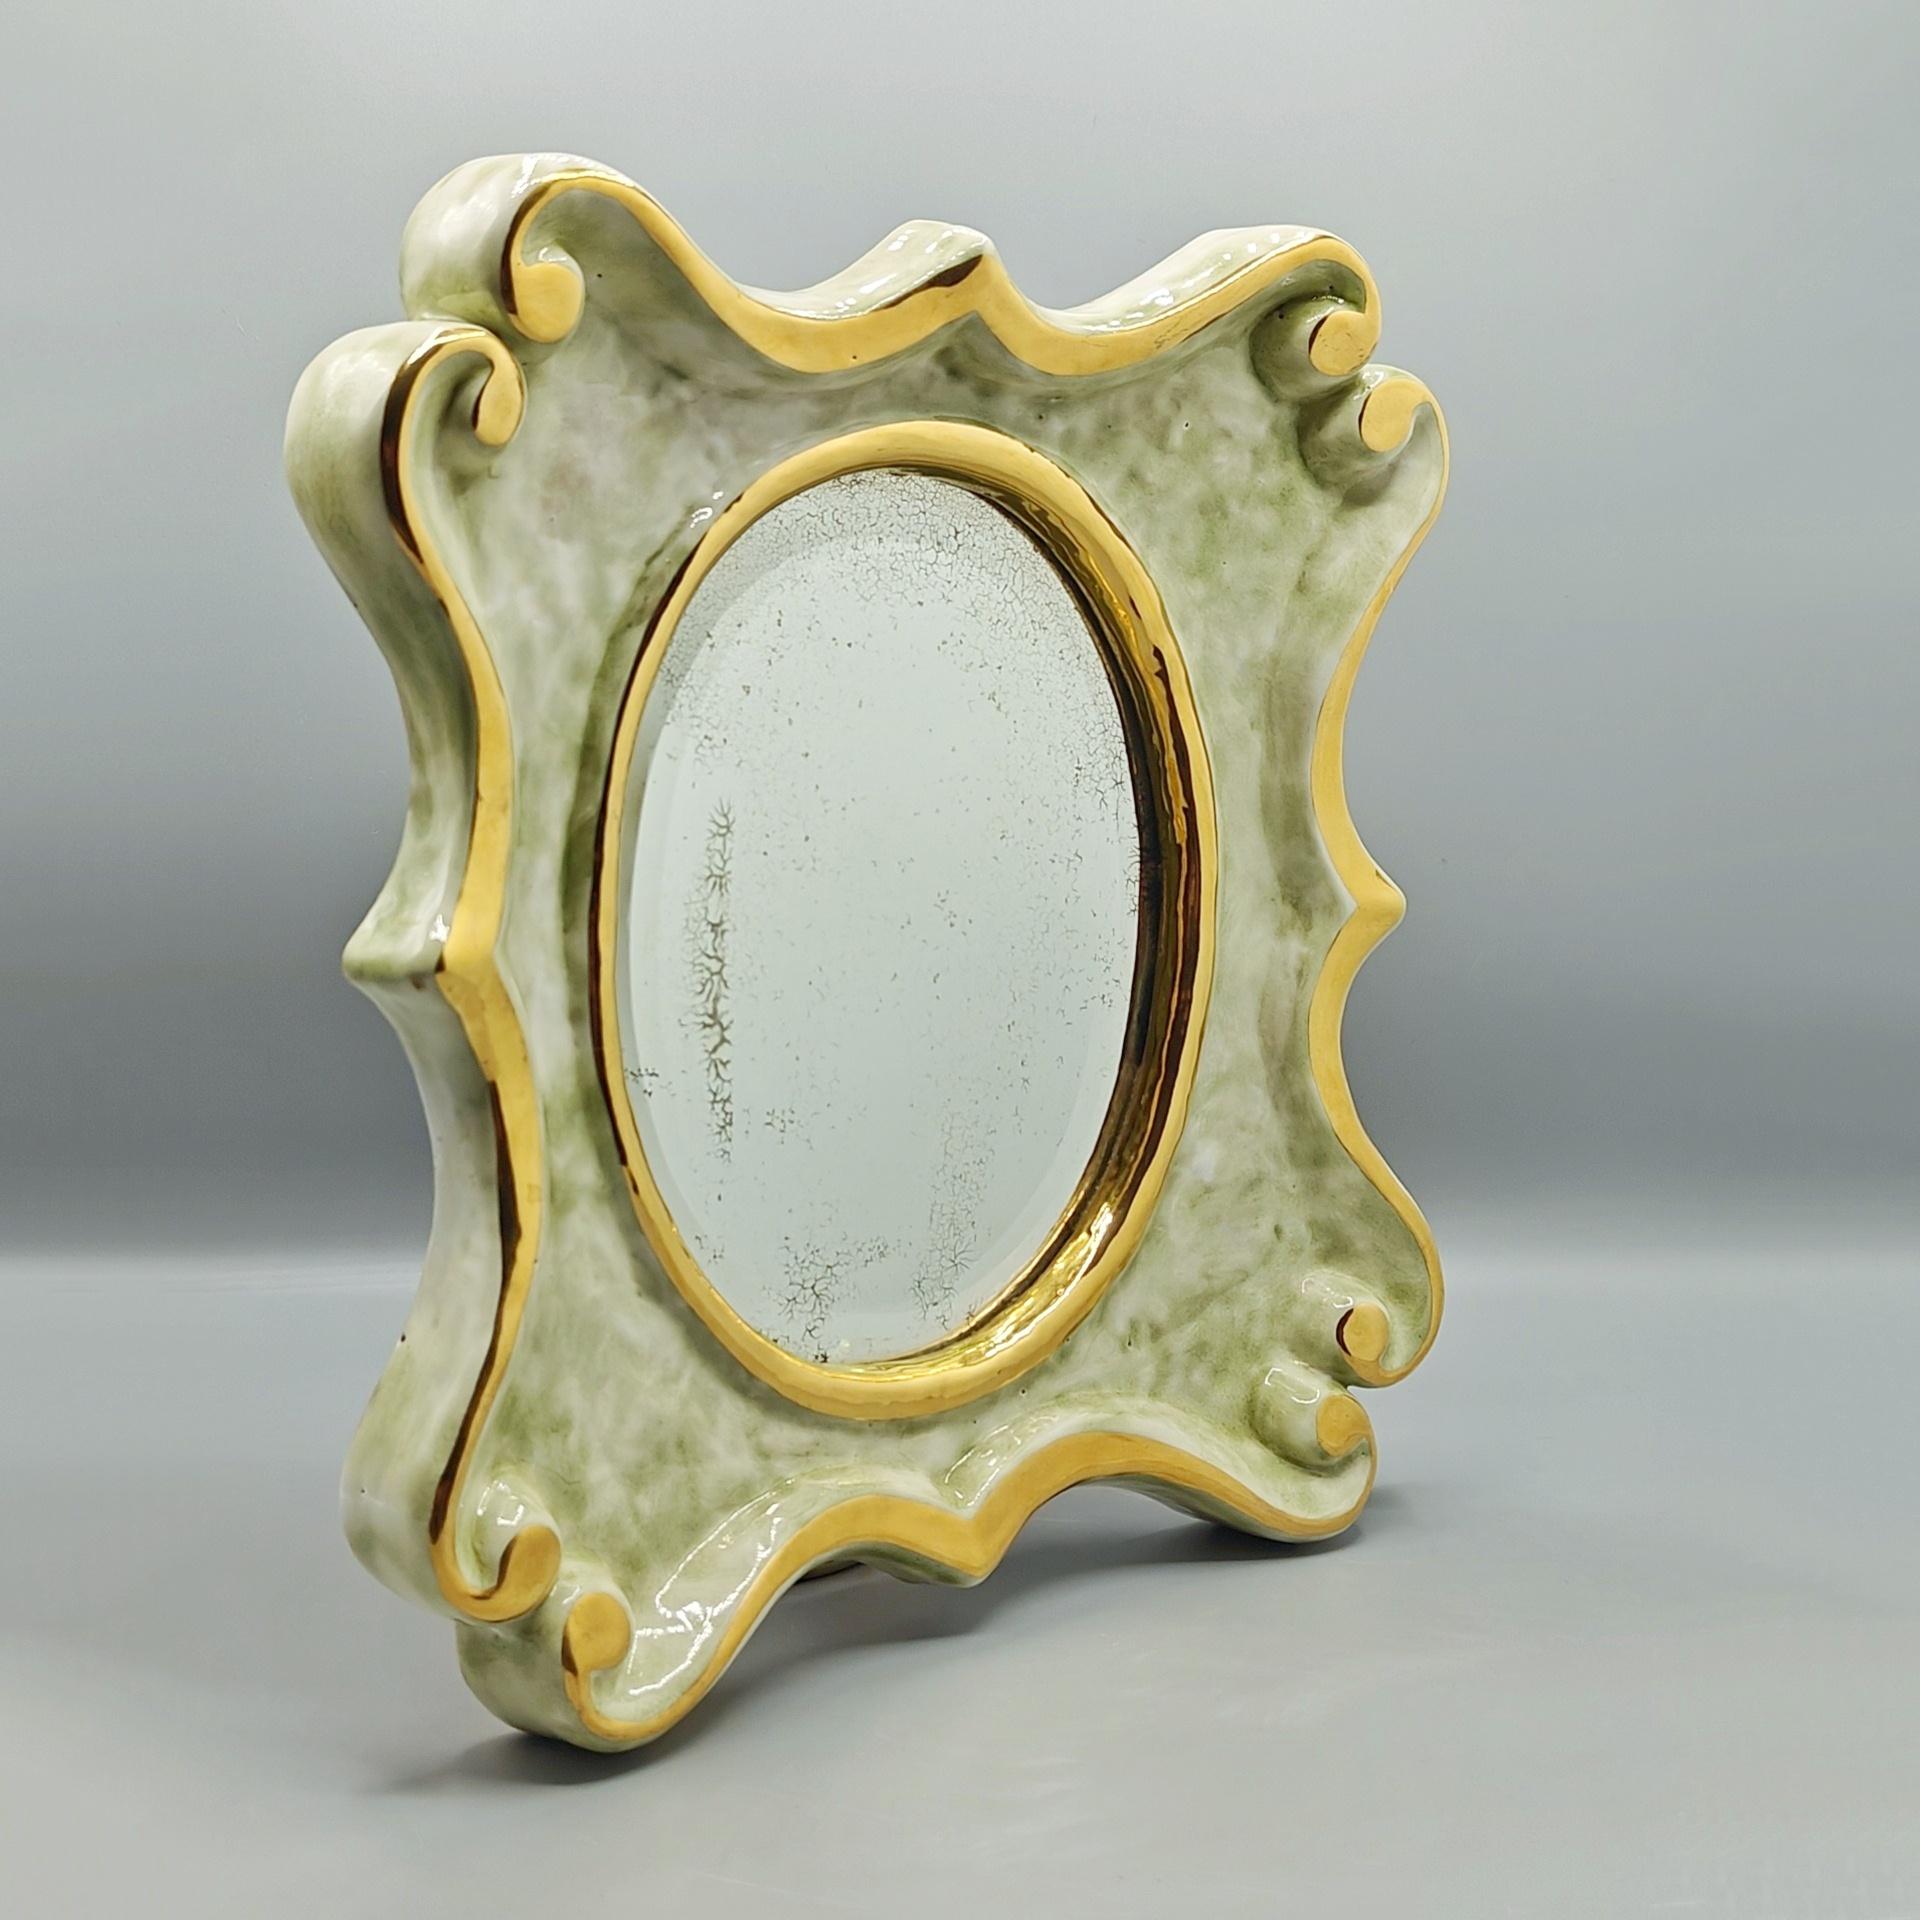 Magnifique et exceptionnel miroir signé de Mithé Espelt, fait très rare pour cette céramiste, en terre estampée et émaillée d'un vert céladon en transparence sur un premier émail blanc.

Mithé Espelt est une céramiste qui a pu composer sa gamme de